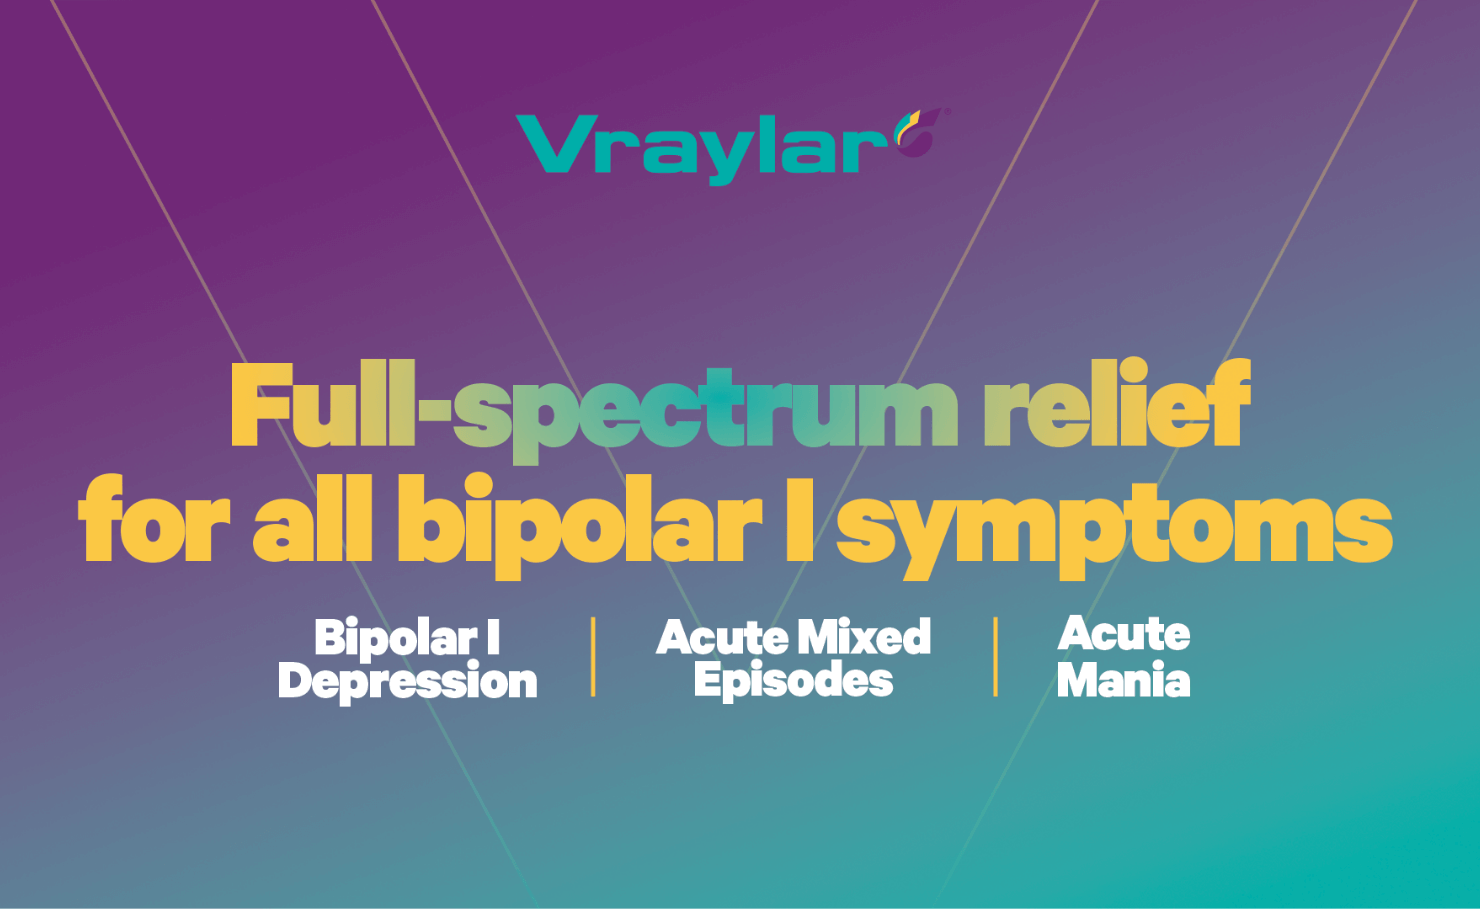 VRAYLAR® provides full-spectrum relief for all bipolar I symptoms.